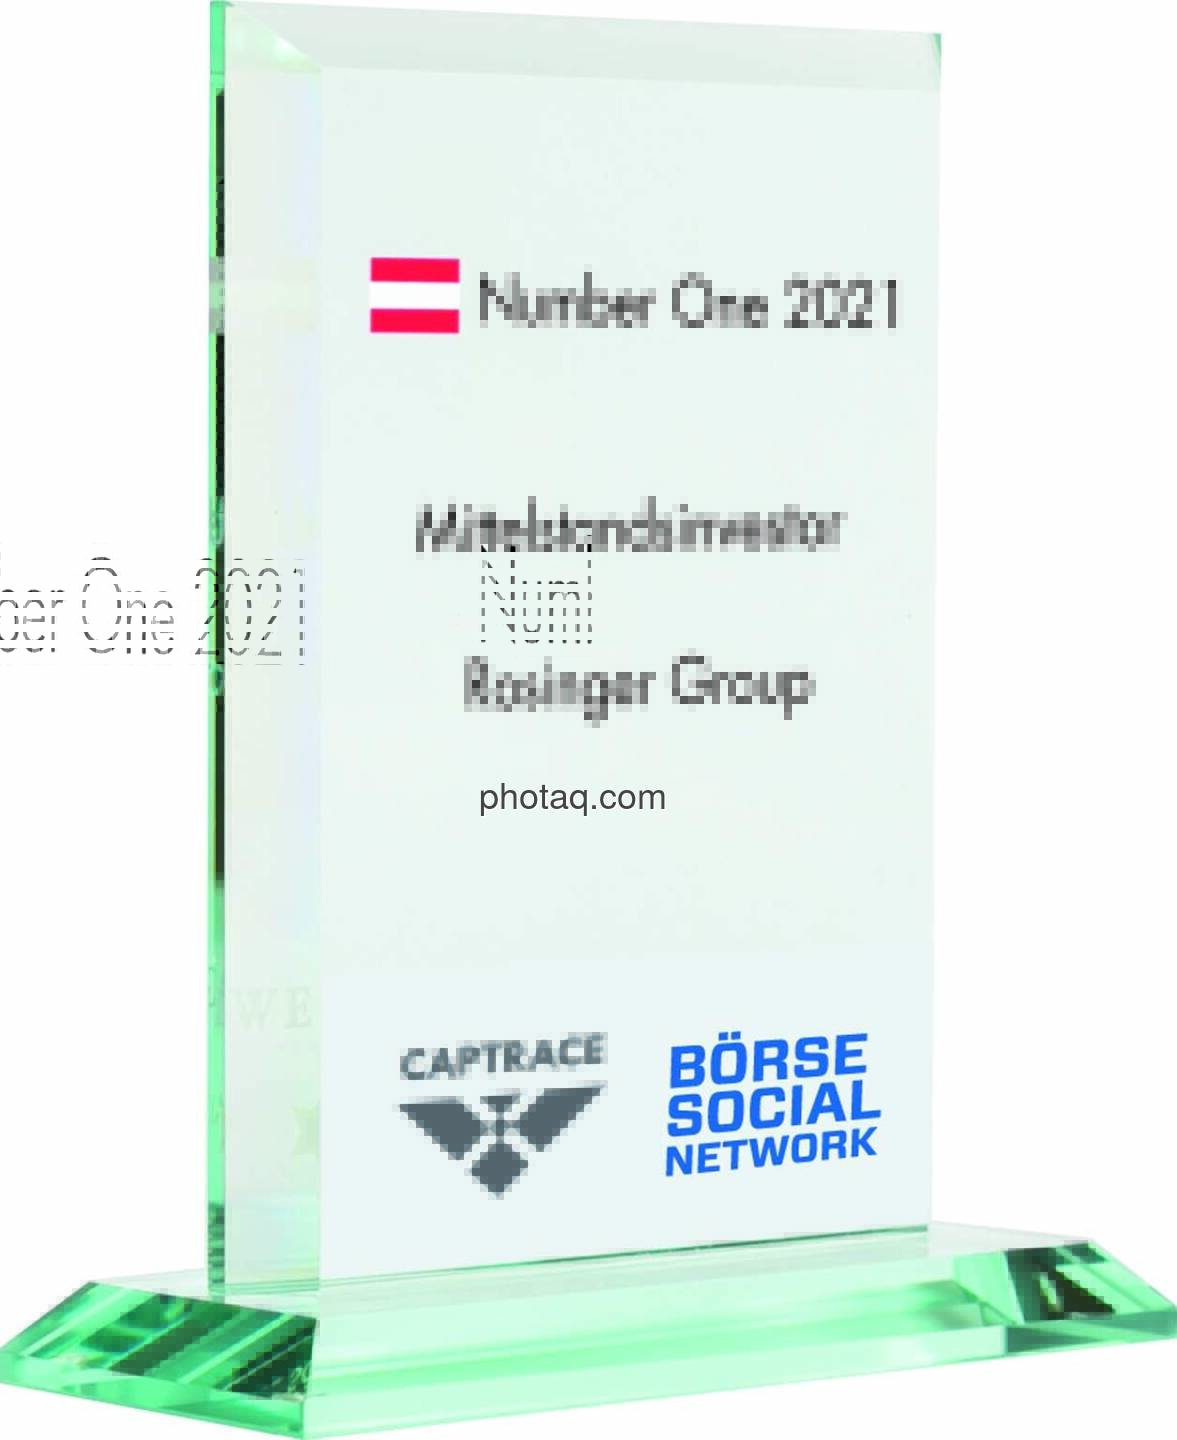 Number One Awards 2021 - Mittelstandsinvestor Rosinger Group